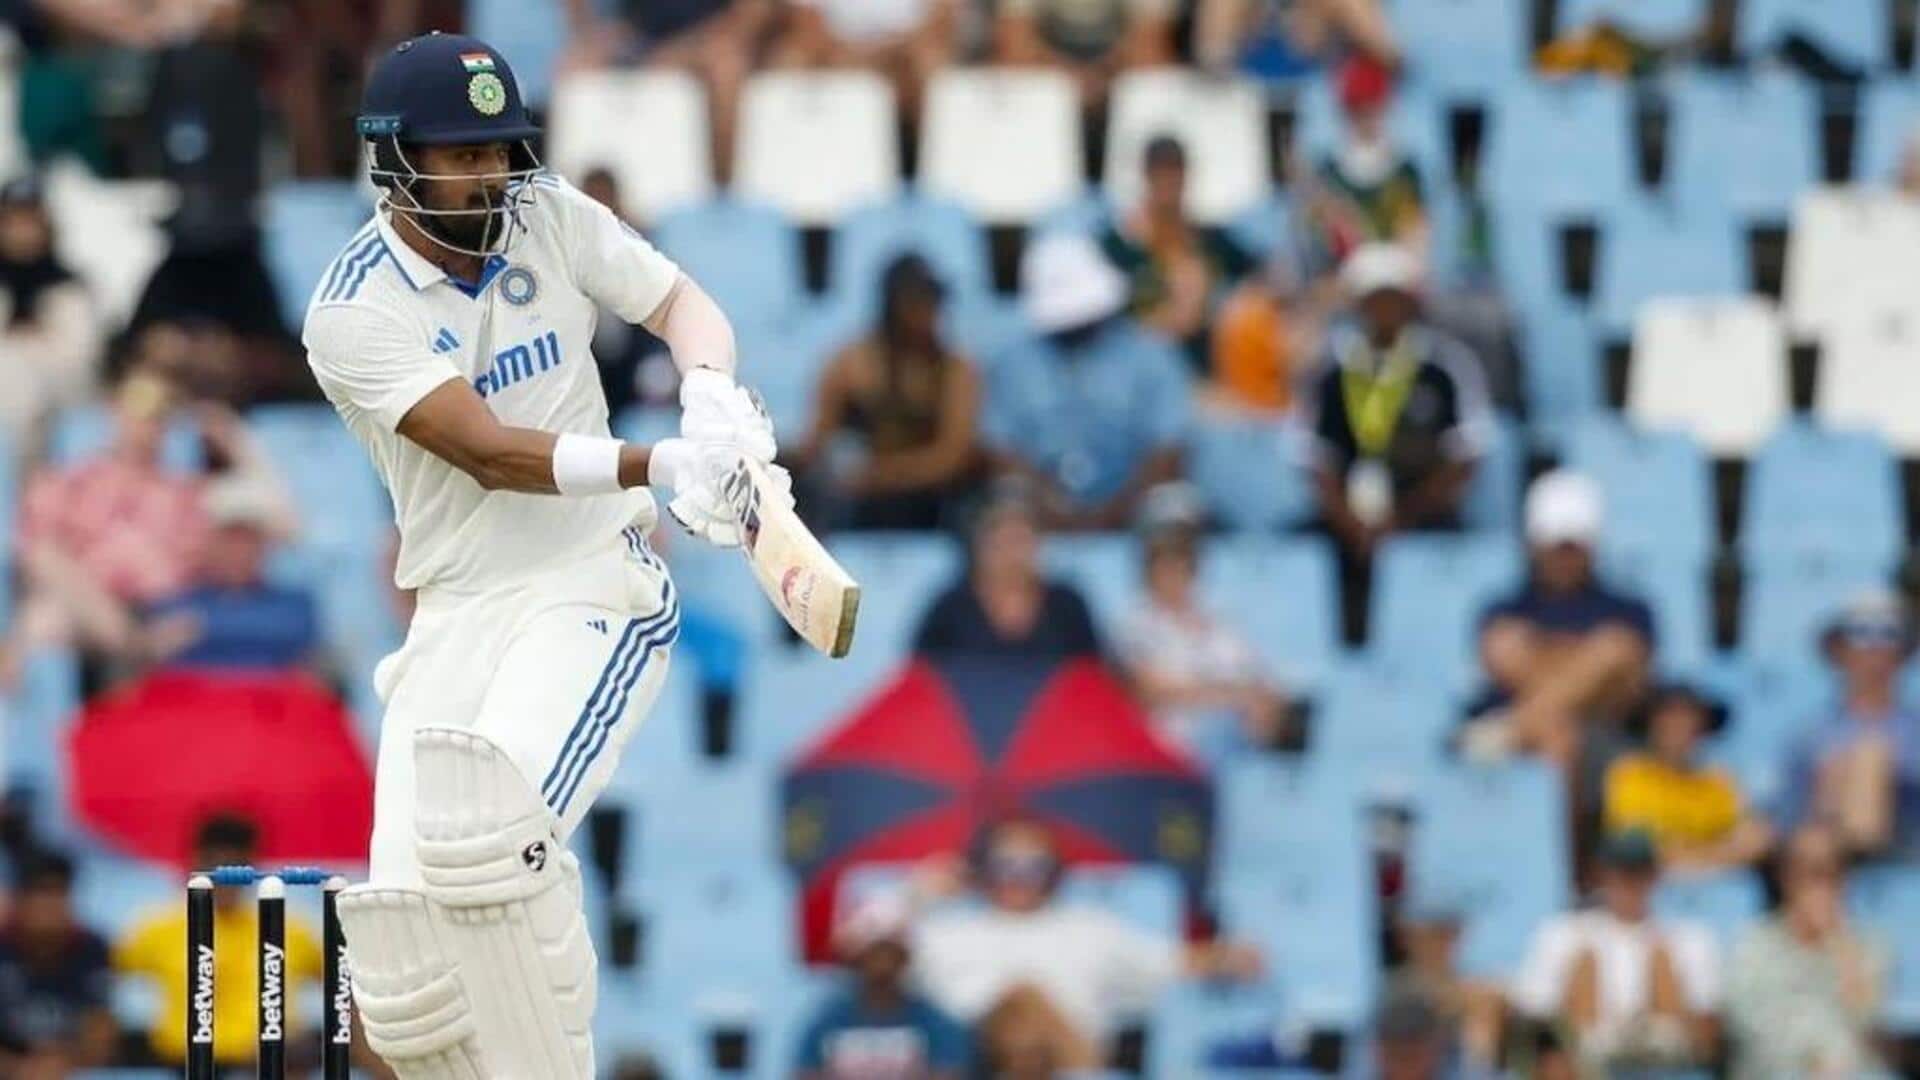 पहला टेस्ट: केएल राहुल ने टेस्ट करियर का 8वां शतक लगाया, जानिए उनके आंकड़े 